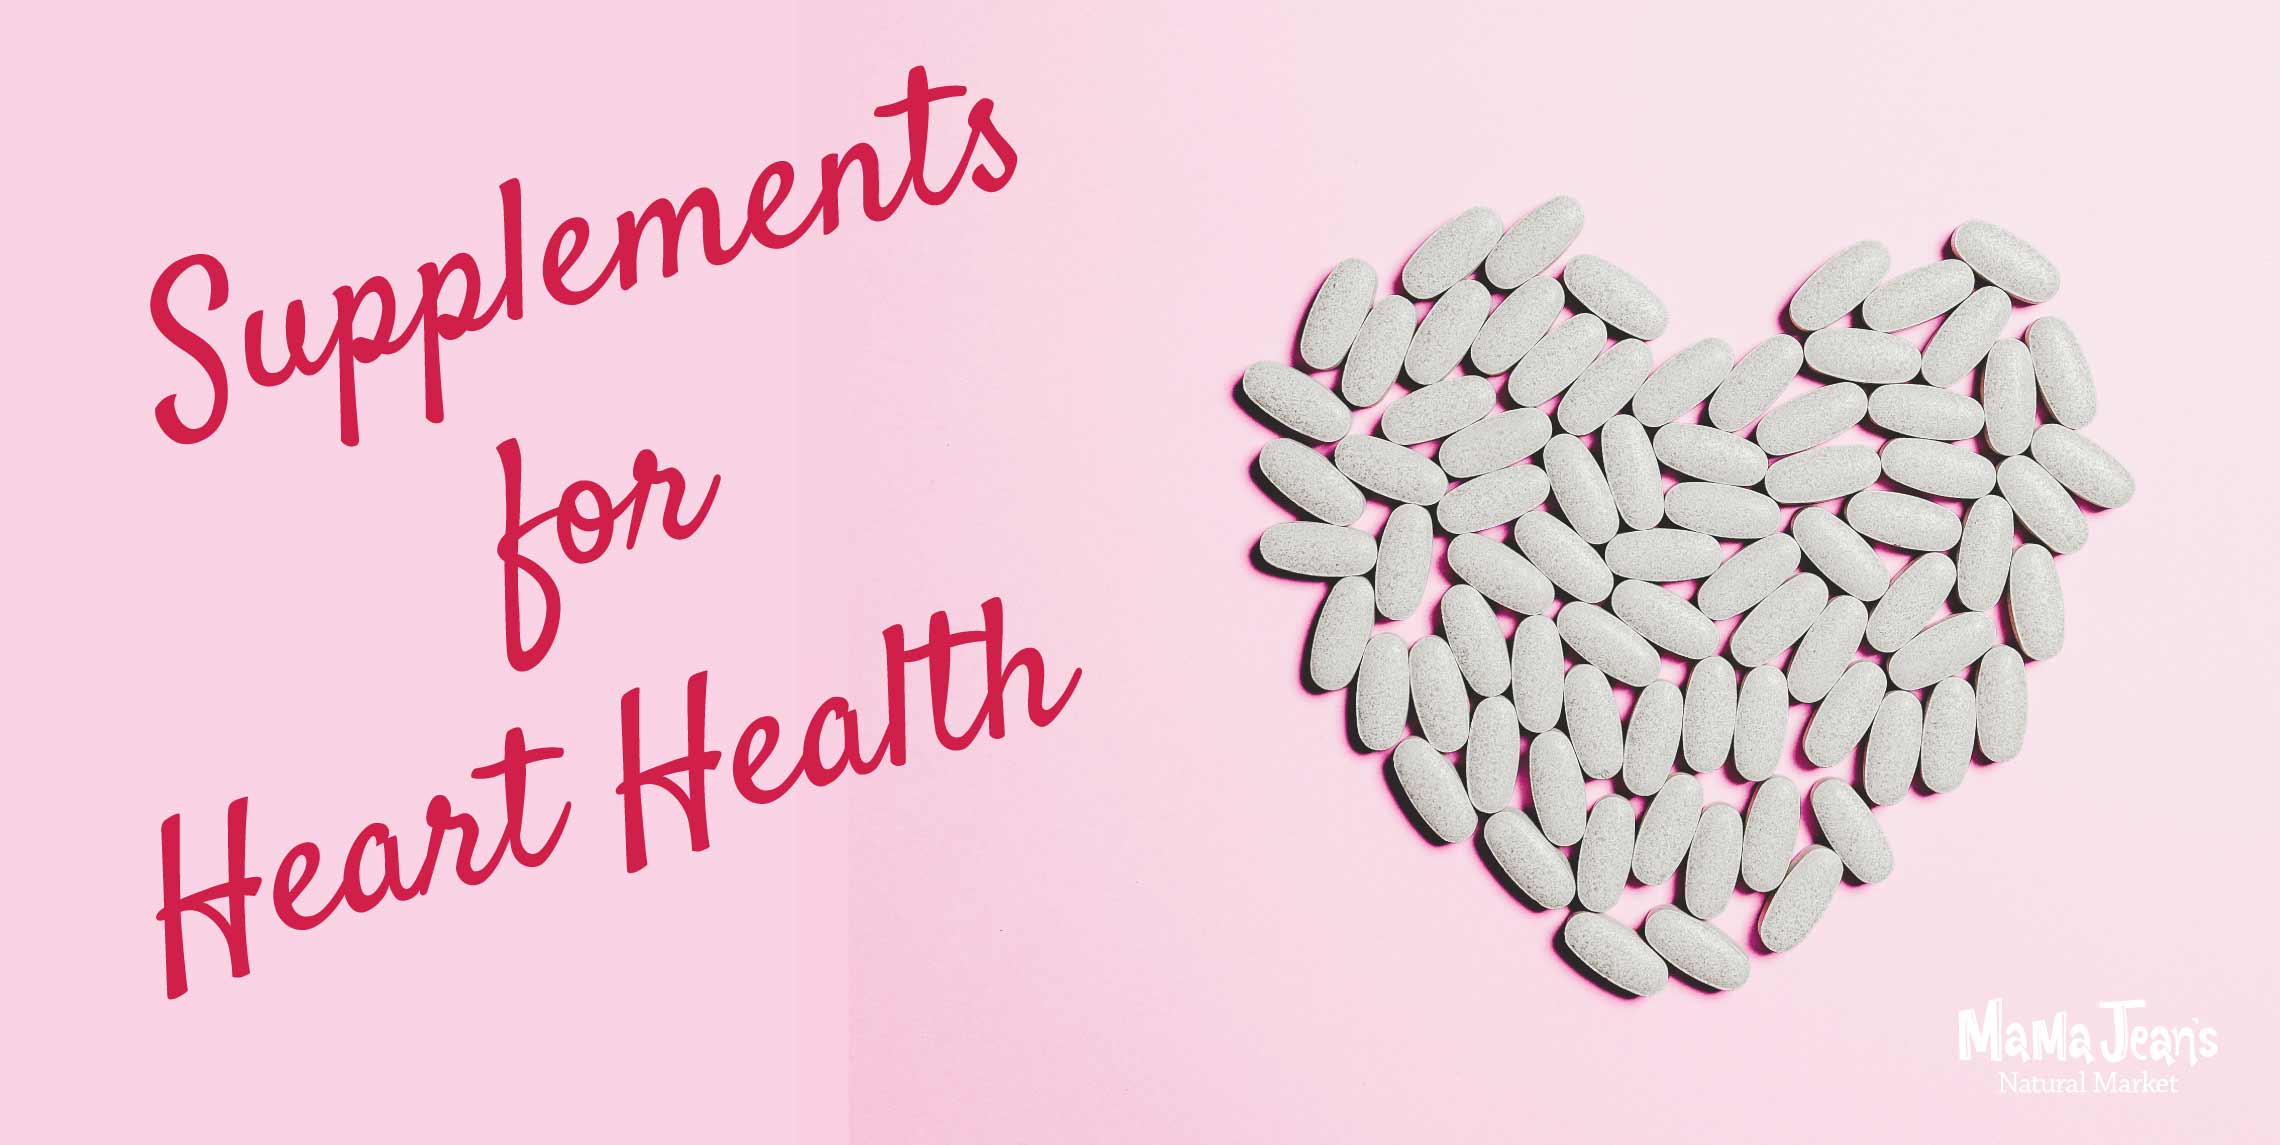 Healthy Heart Supplements